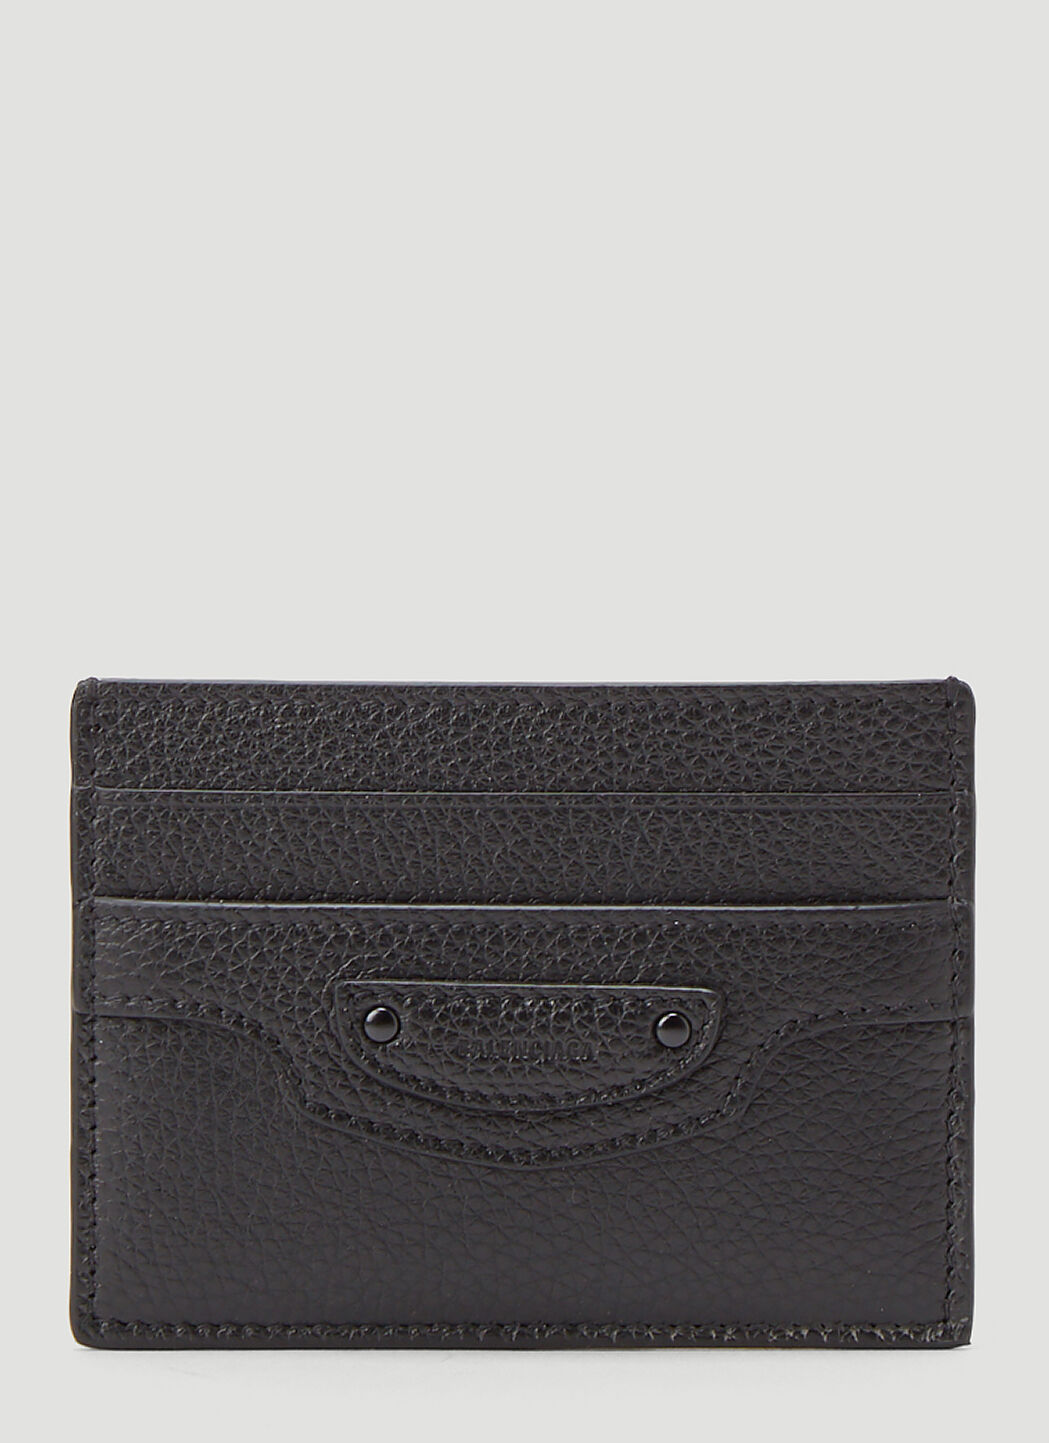 Balenciaga Black Calfskin Neo Classic Card Holder  modaselle